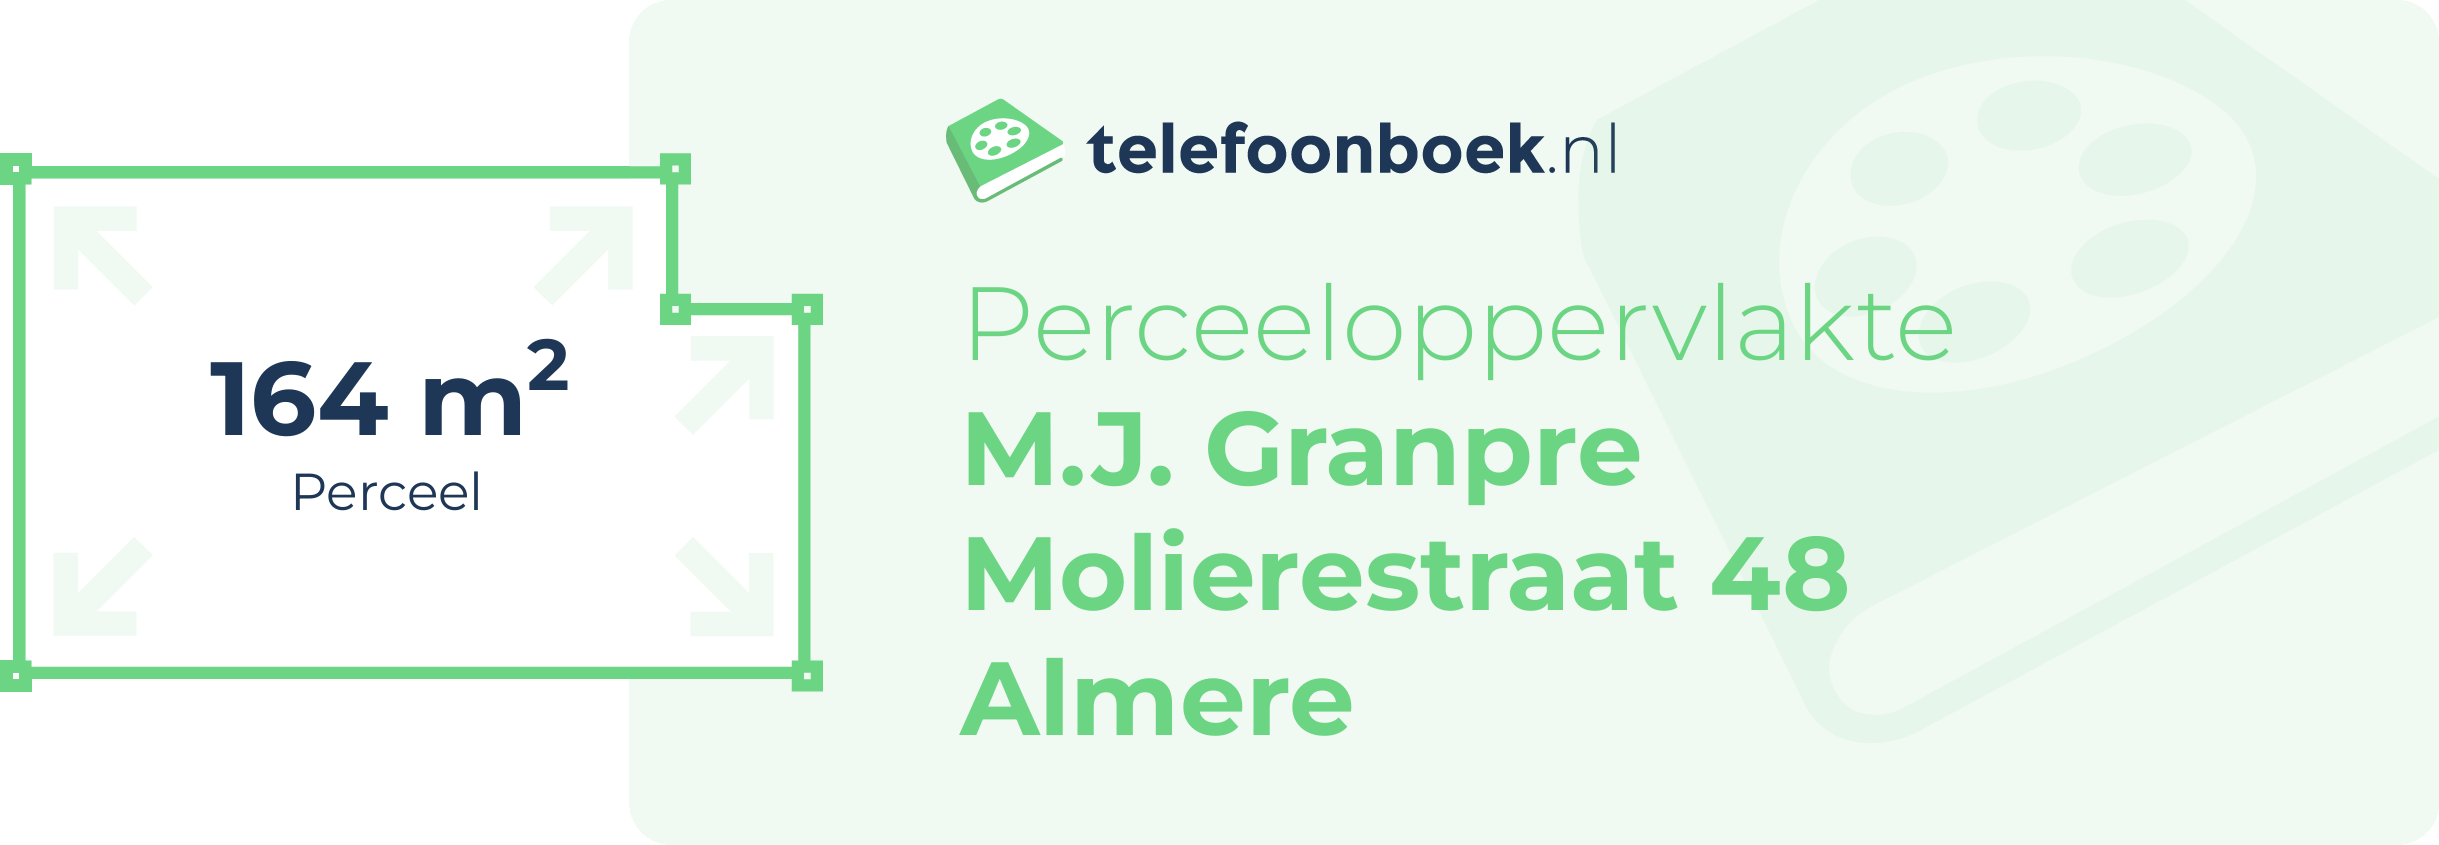 Perceeloppervlakte M.J. Granpre Molierestraat 48 Almere